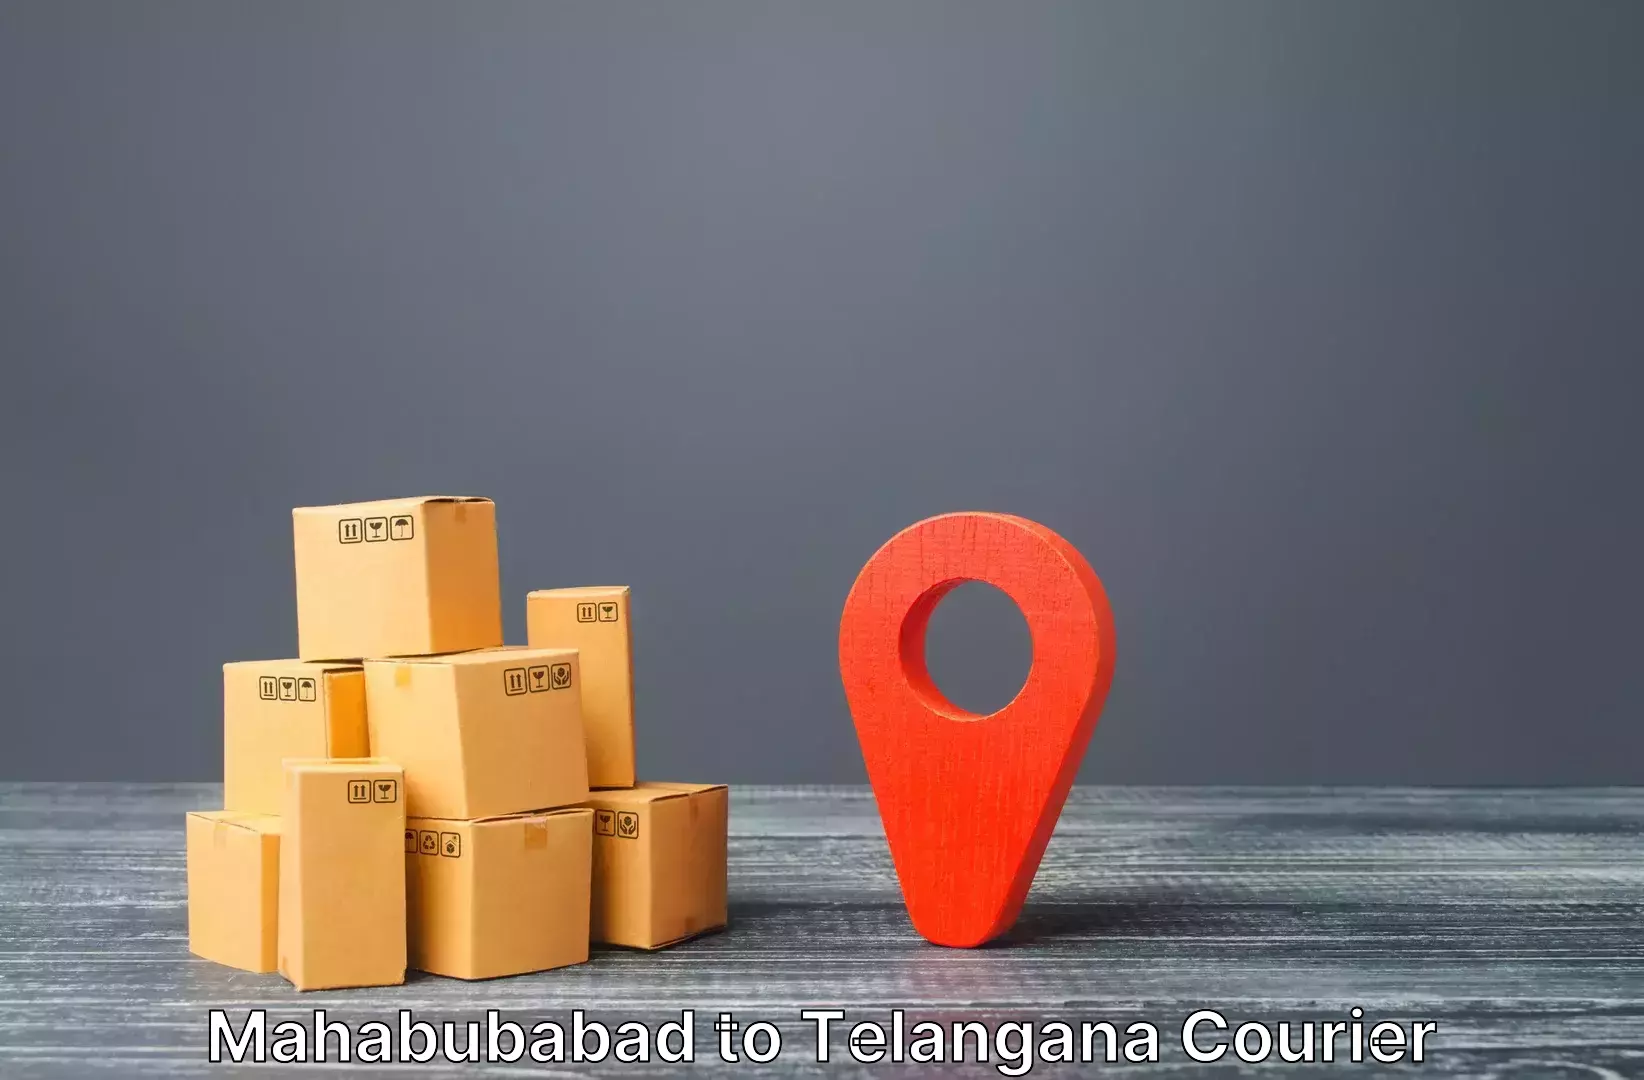 Luggage forwarding service Mahabubabad to Aswaraopeta